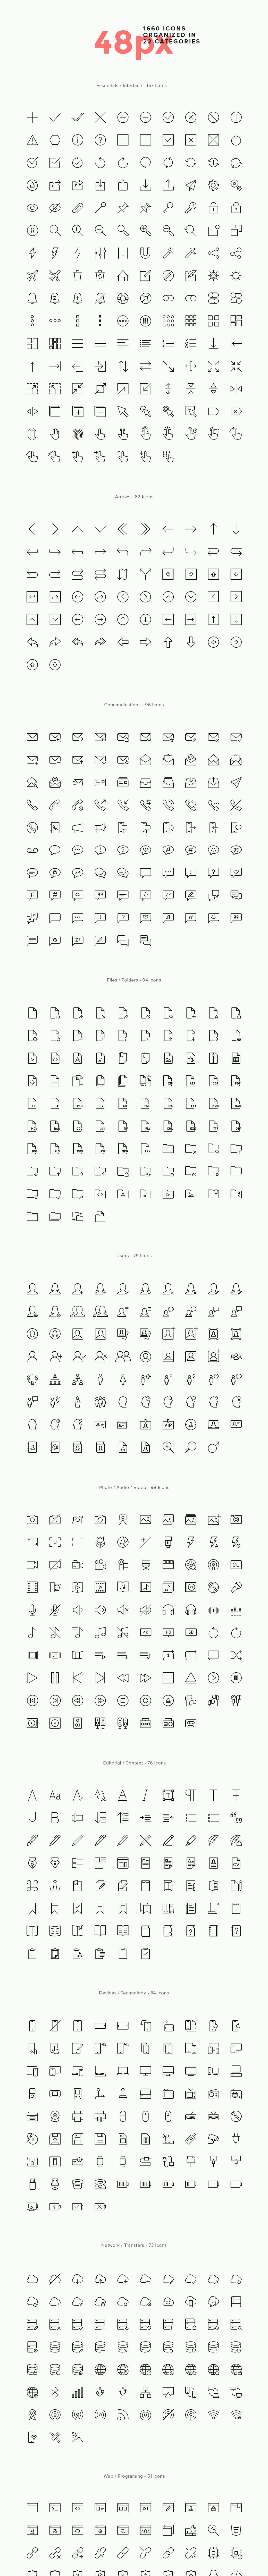 一套优质简约的线稿图标 Simple Line Icons